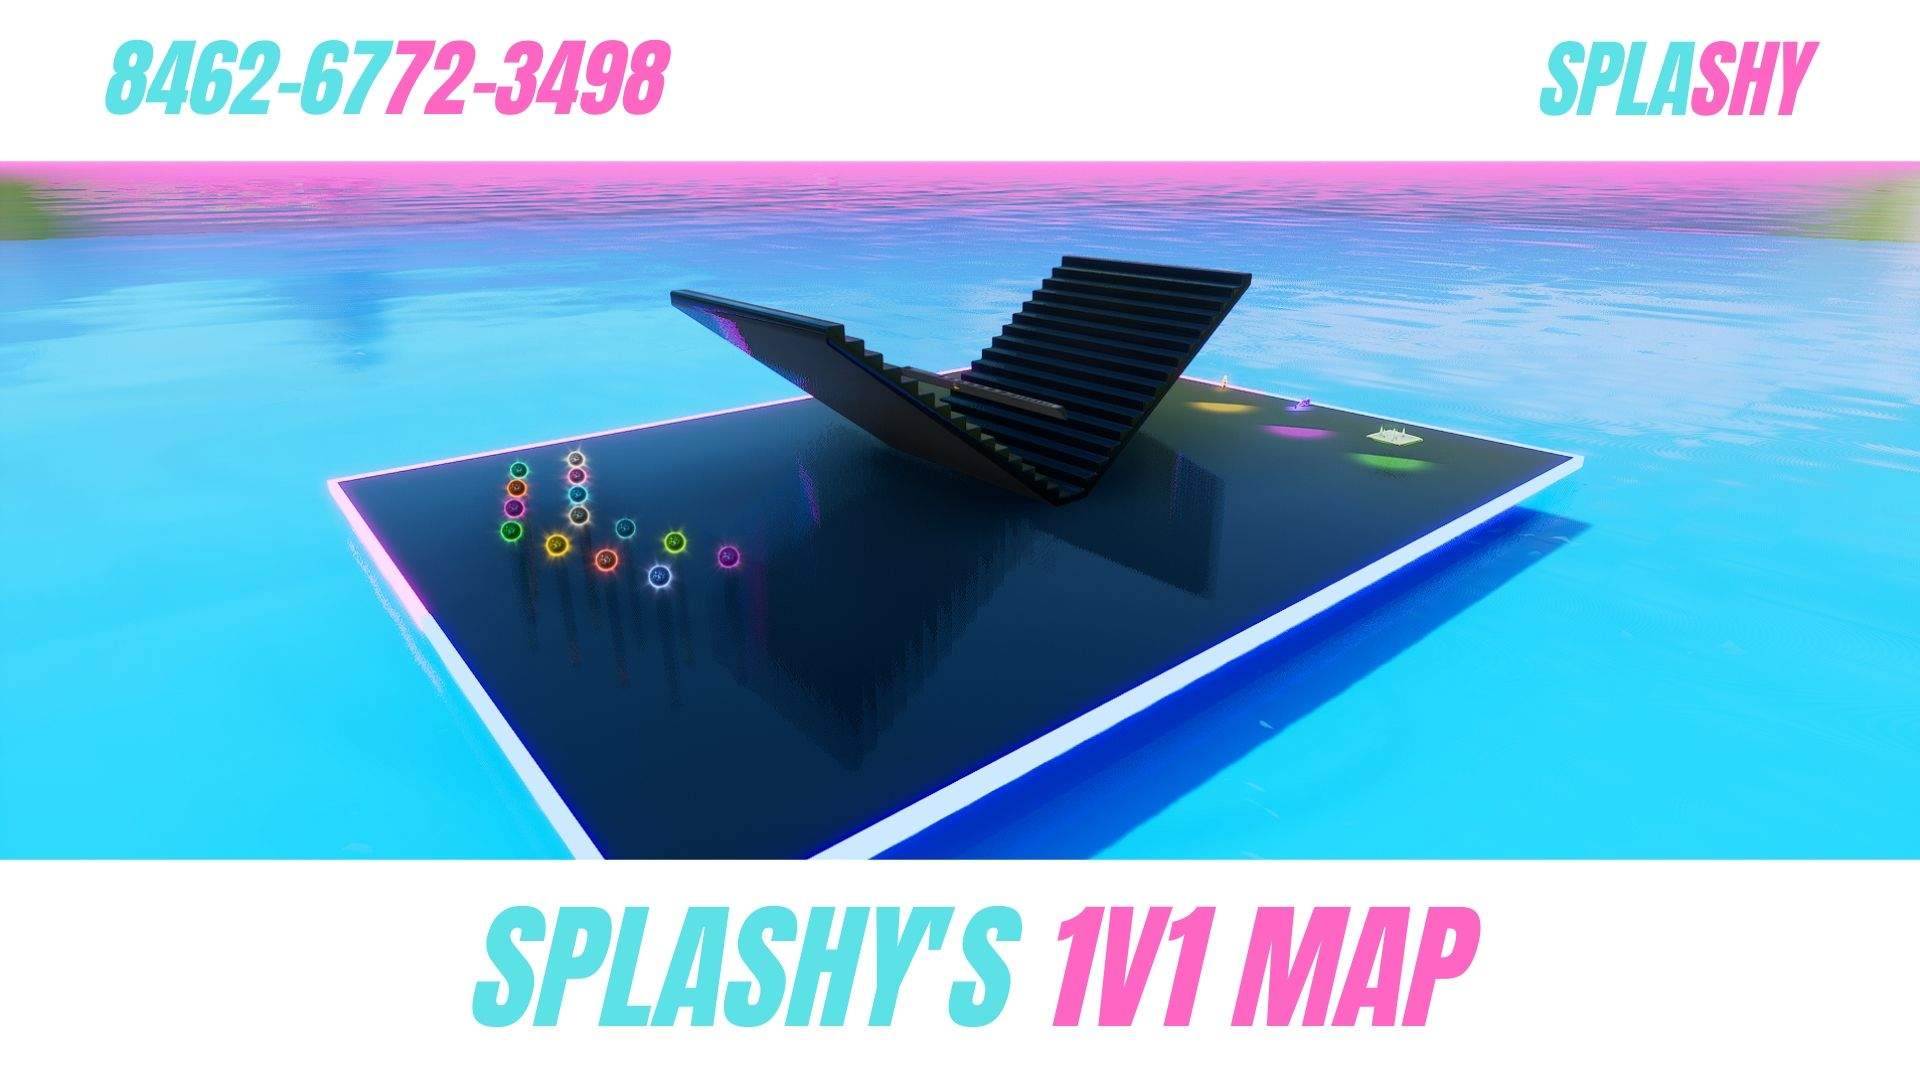 SPLASHY'S 1V1 MAP